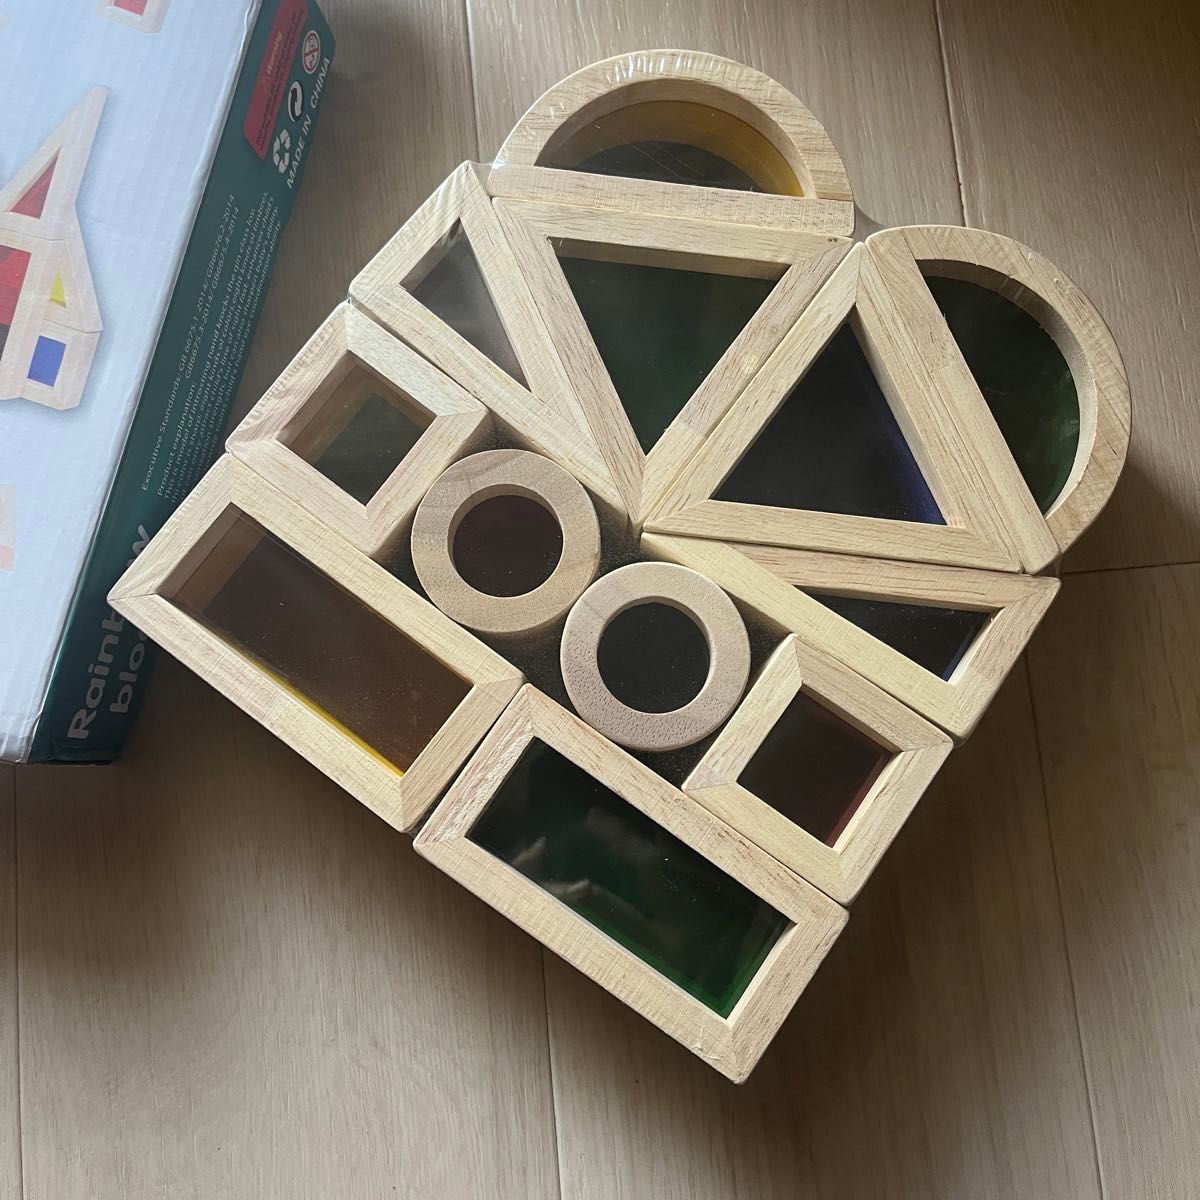 カラフル　木製　ビルディングブロック　モンテッソーリ　教育玩具　 知育　積み木  おもちゃ　レインボー